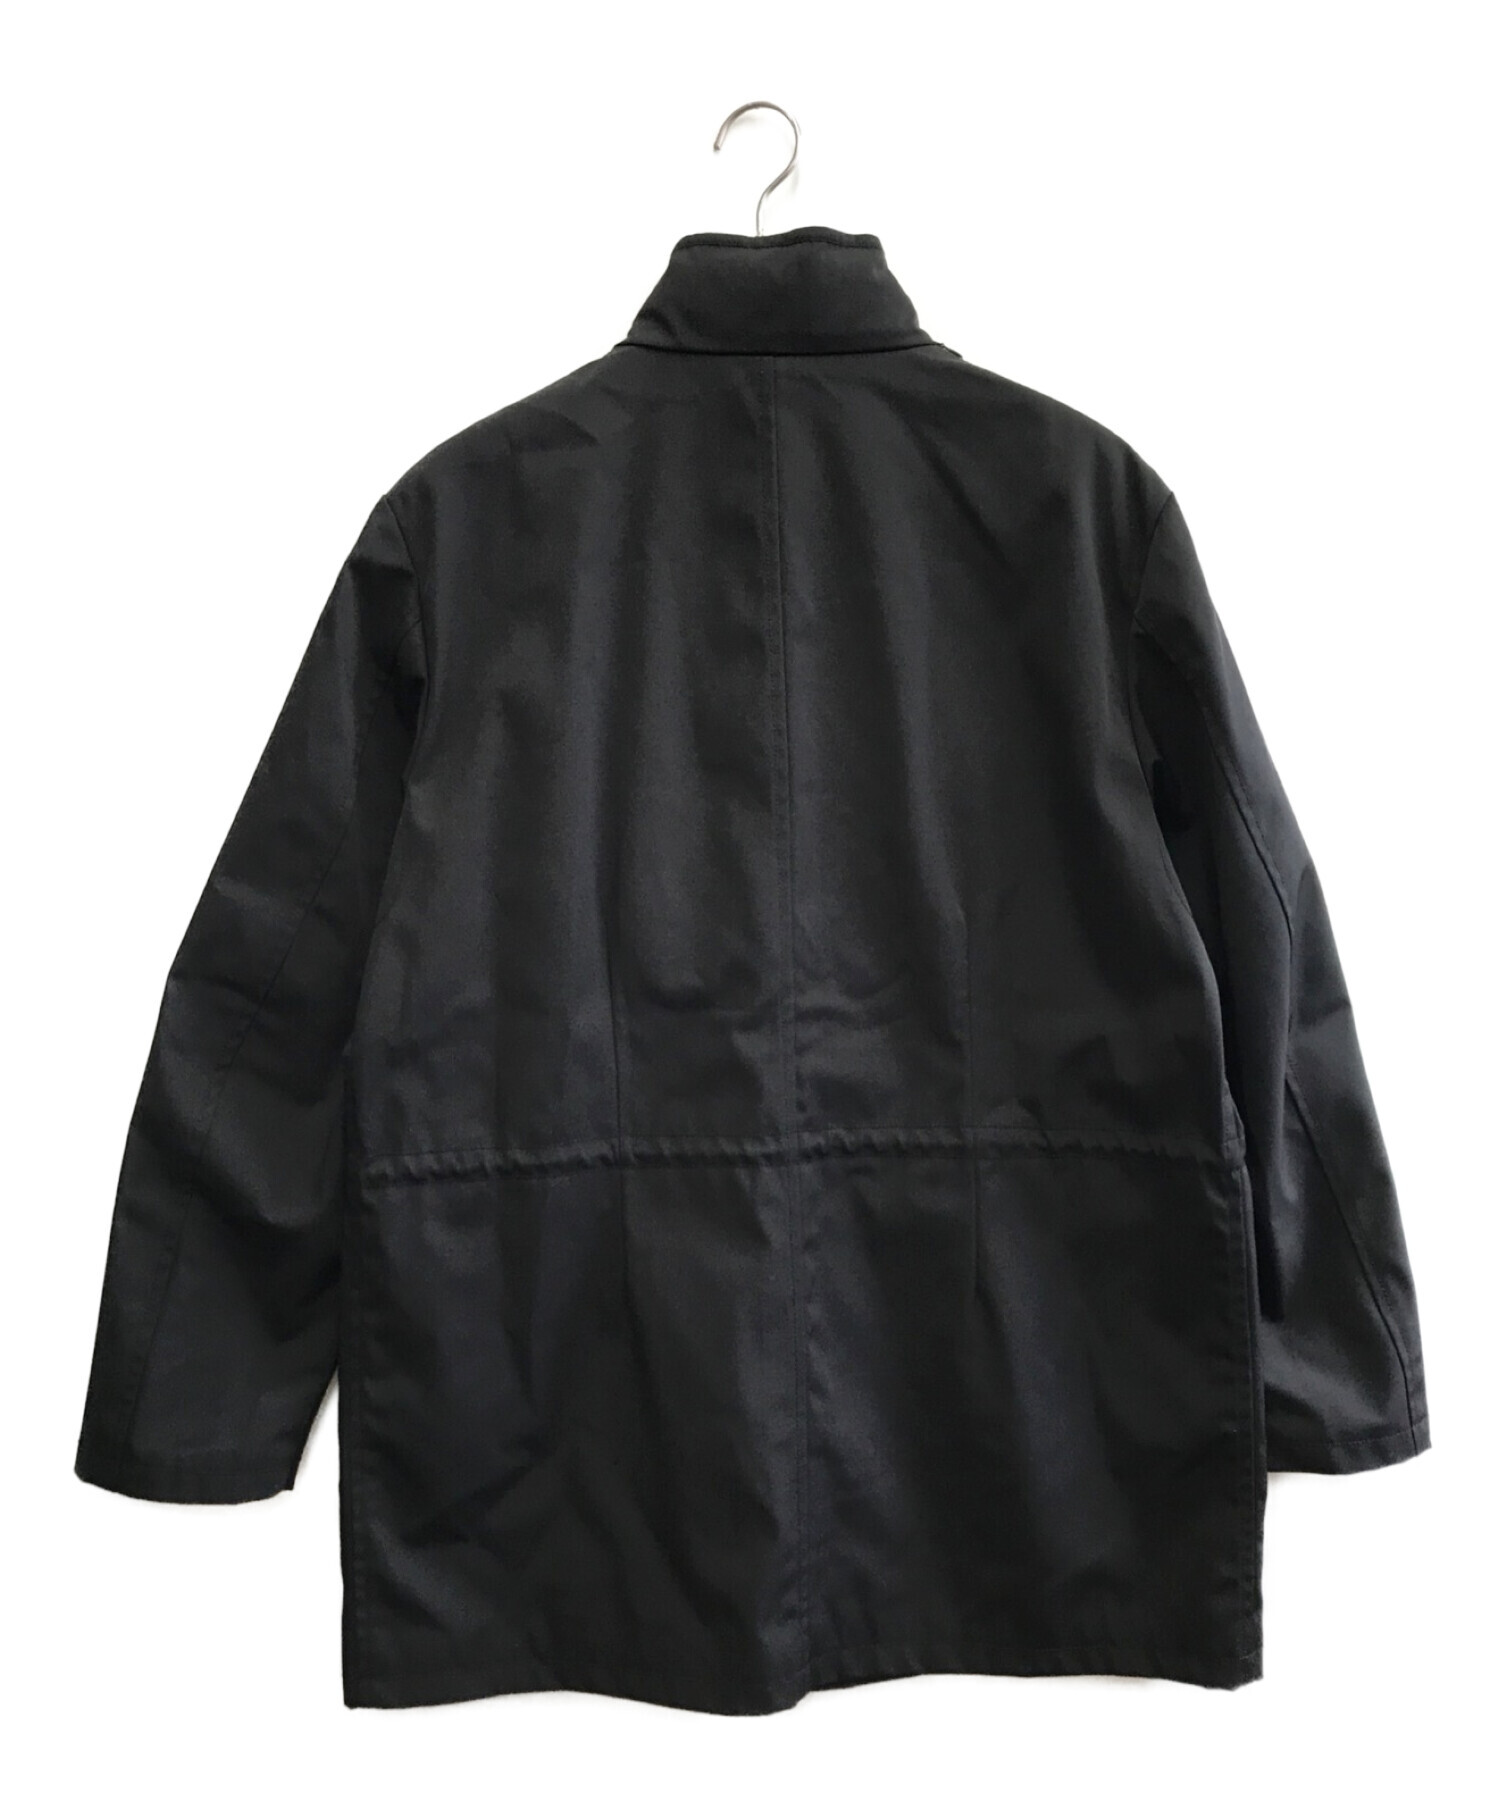 ARMANI COLLEZIONI (アルマーニ コレツィオーニ) ジップアップジャケット ブラック サイズ:不明